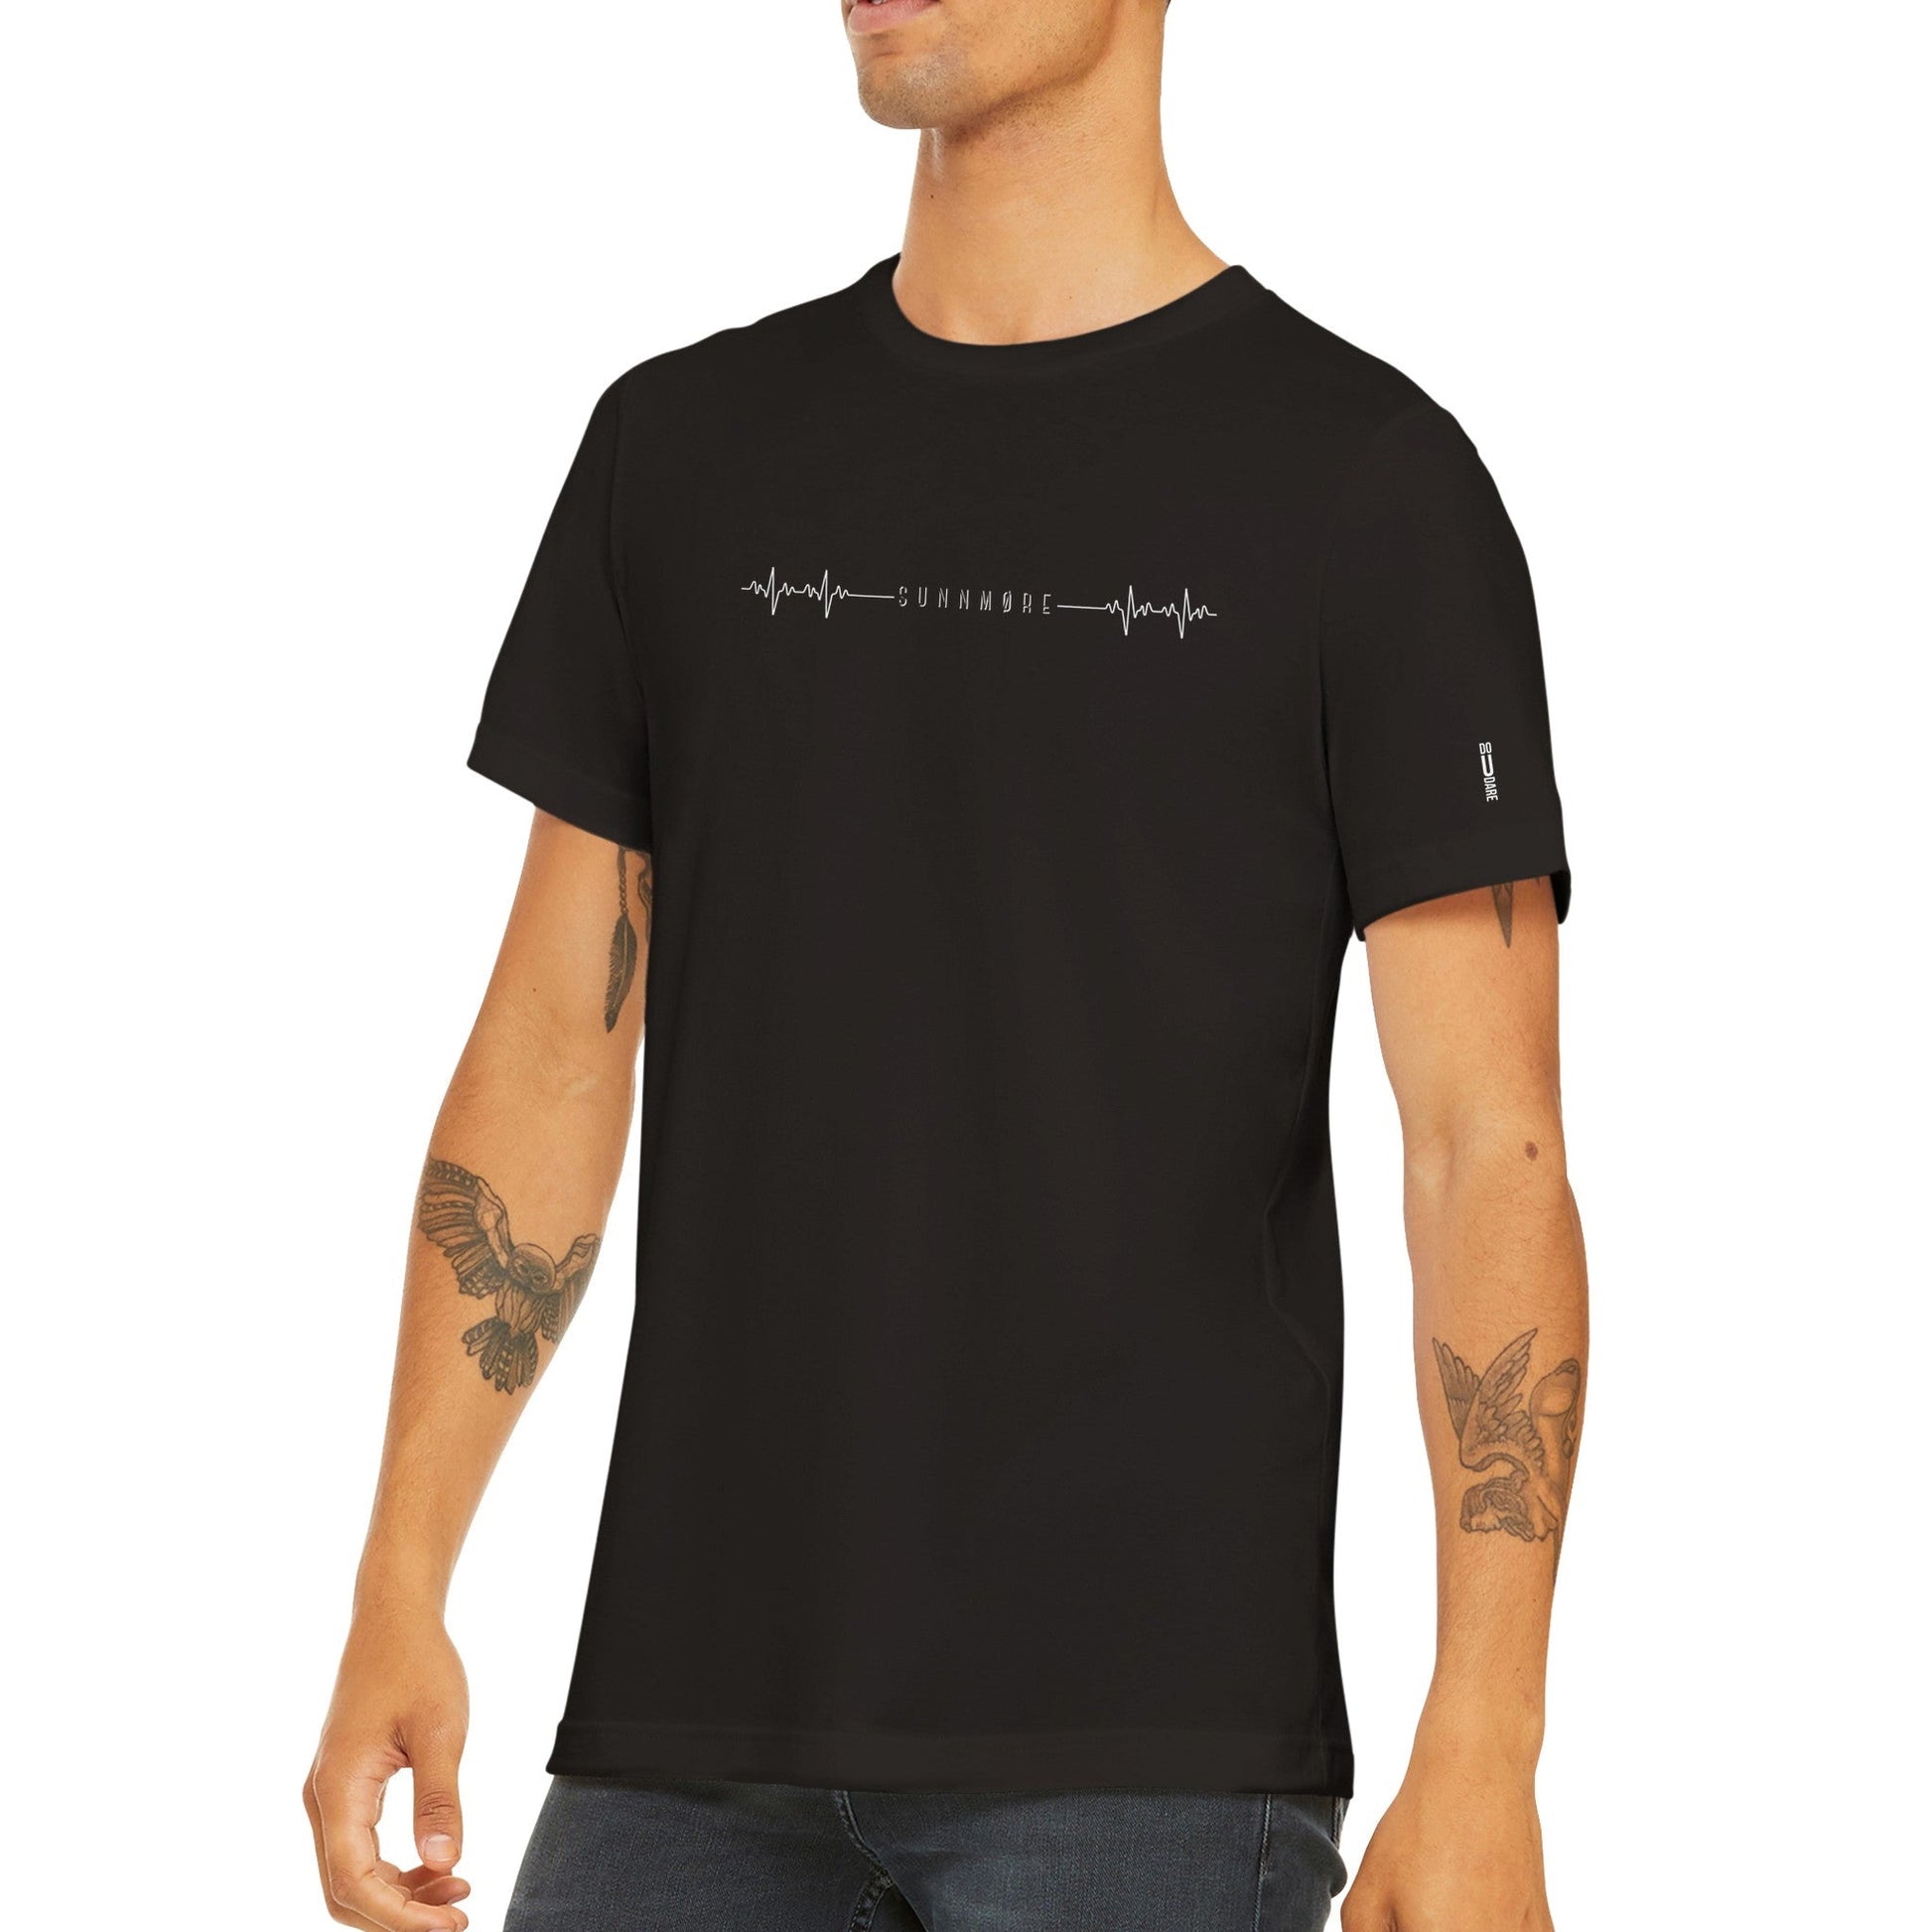 Hartbeat Unisex t-skjorte med SUNNMØRE i midten - DoUdare